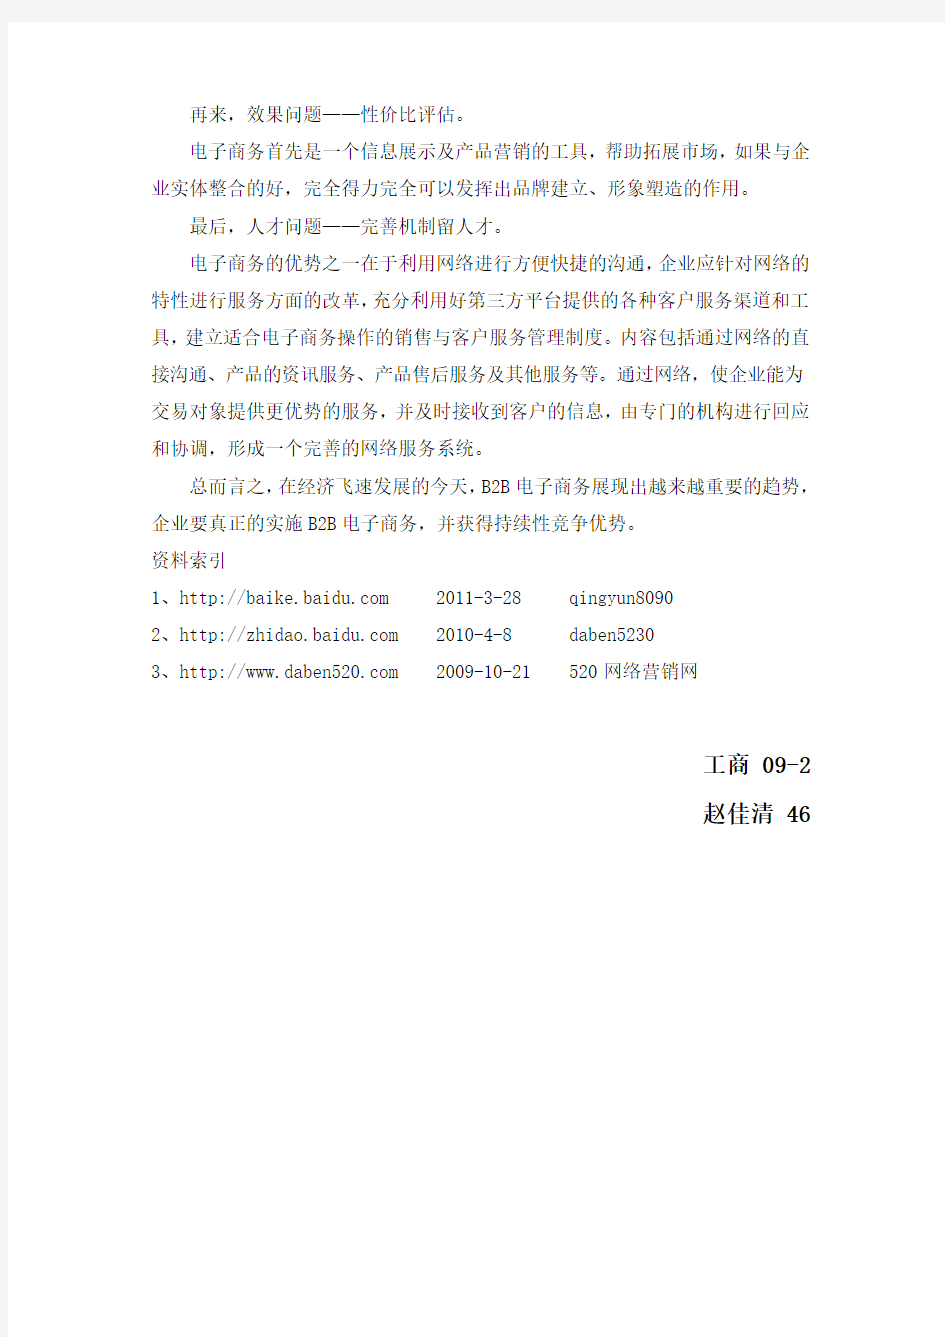 中国知名B2B电子商务网站分析报告